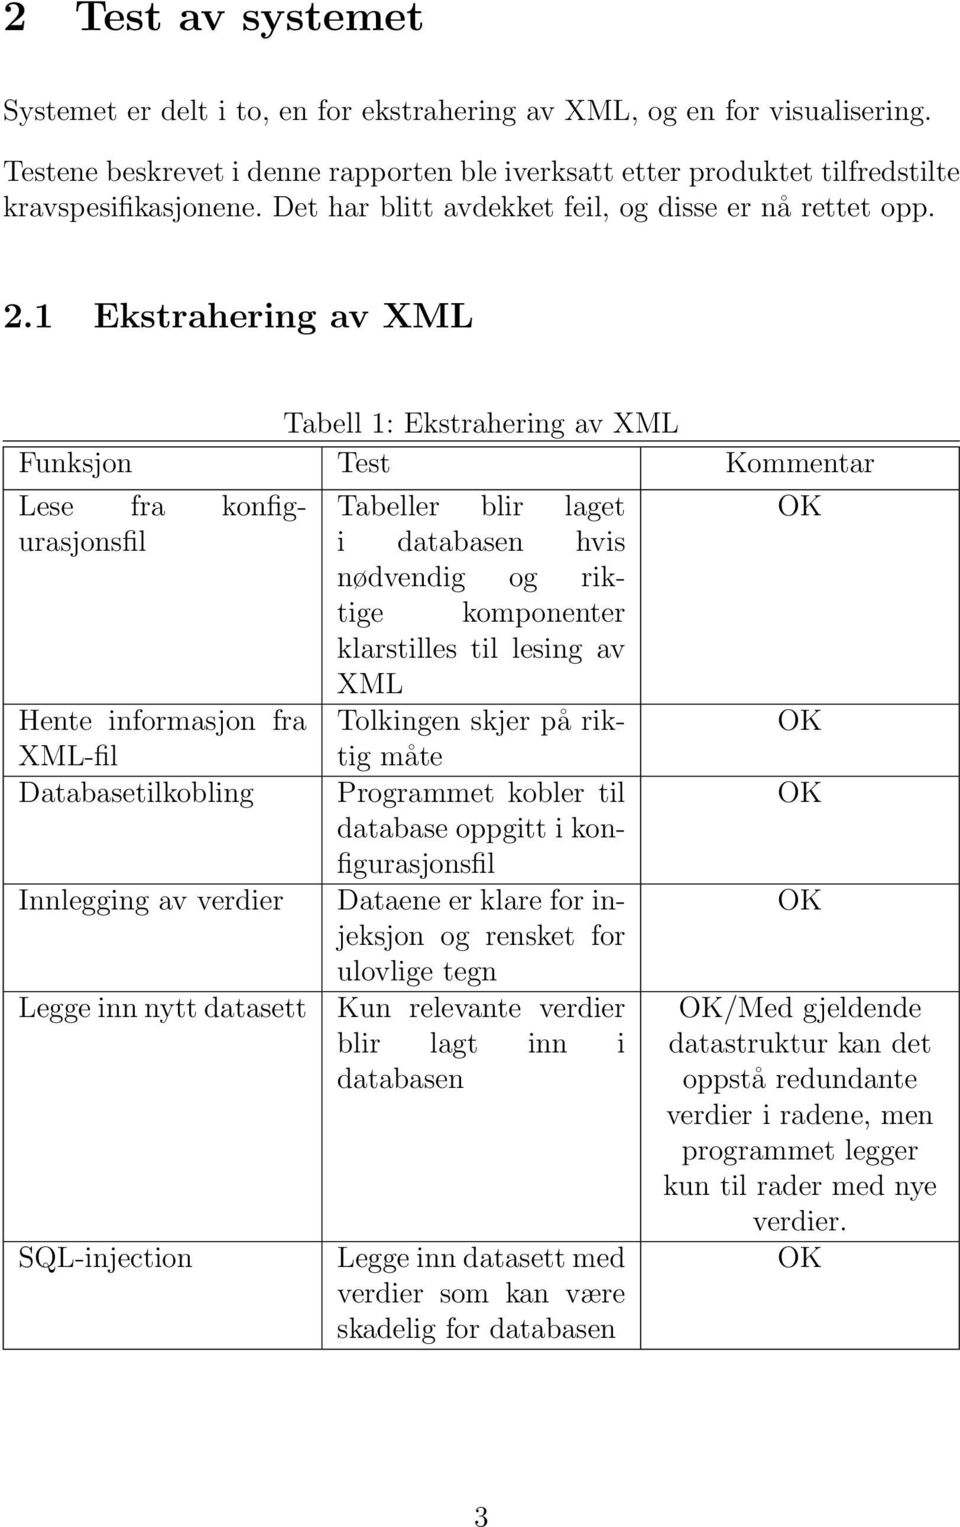 1 Ekstrahering av XML Tabell 1: Ekstrahering av XML Lese fra konfigurasjonsfil Hente informasjon fra XML-fil Databasetilkobling Innlegging av verdier Legge inn nytt datasett SQL-injection Tabeller